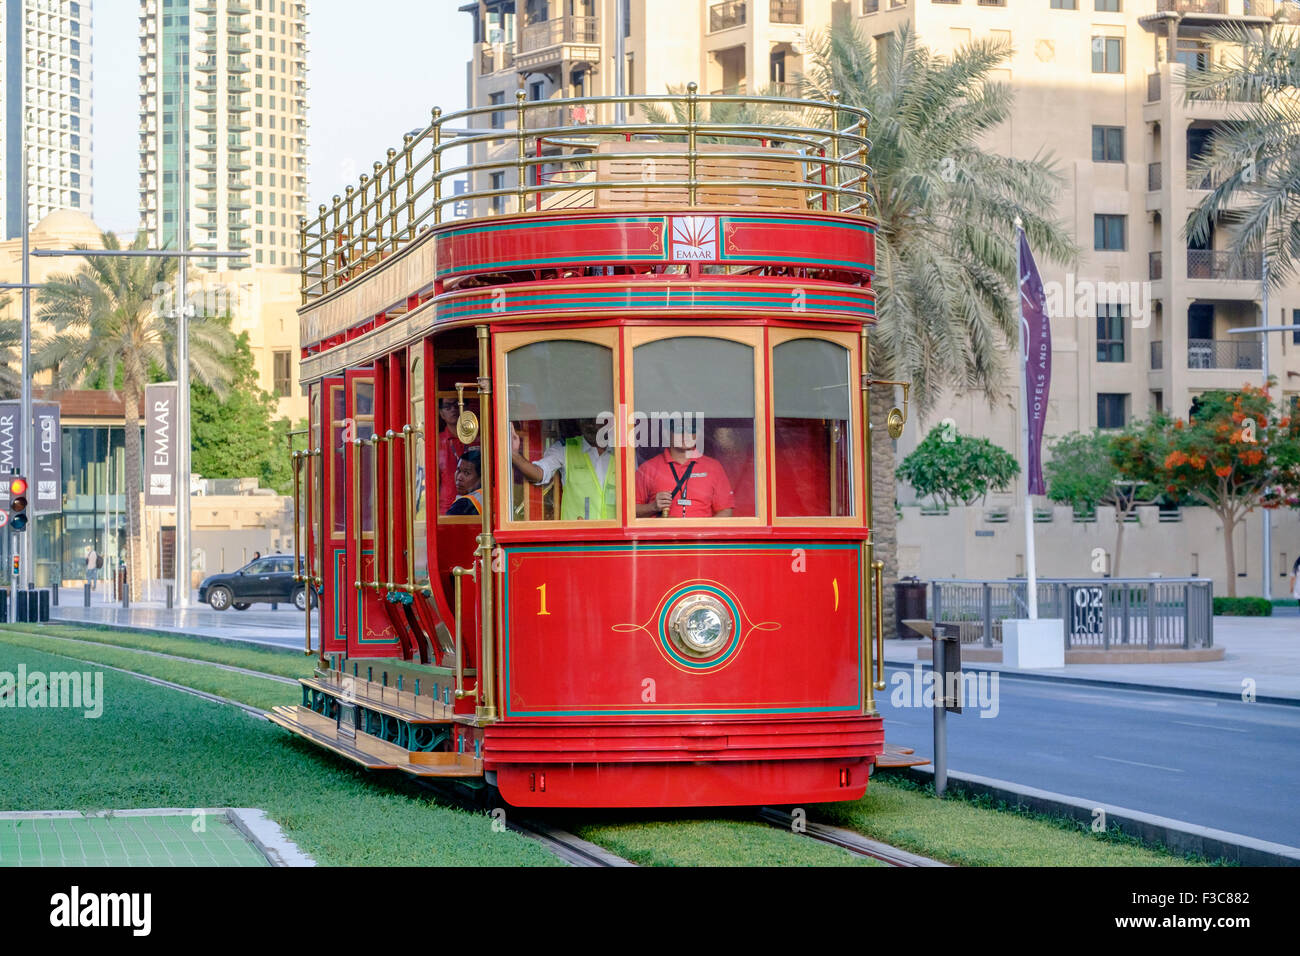 Nuova Dubai carrello (San Francisco stile cella a combustibile idrogeno alimentato tram) che viaggia lungo la strada in Dubai Emirati Arabi Uniti Foto Stock